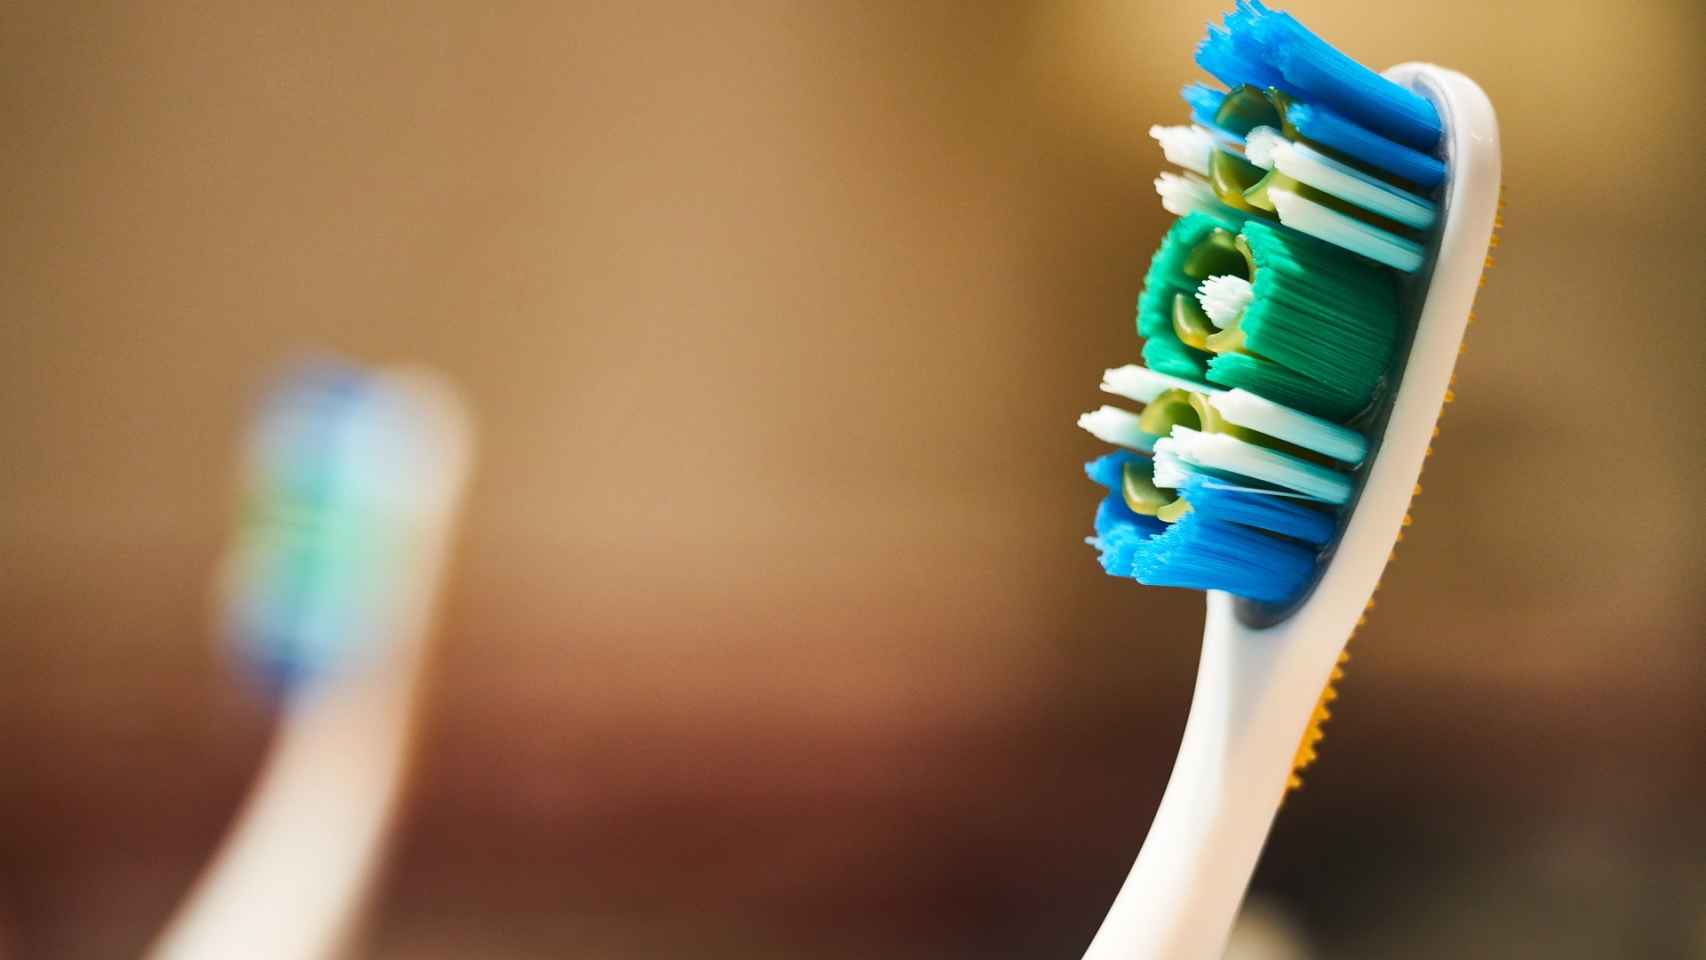 Cambiar nuestro cepillo de dientes periódicamente nos evitará infecciones bucales.